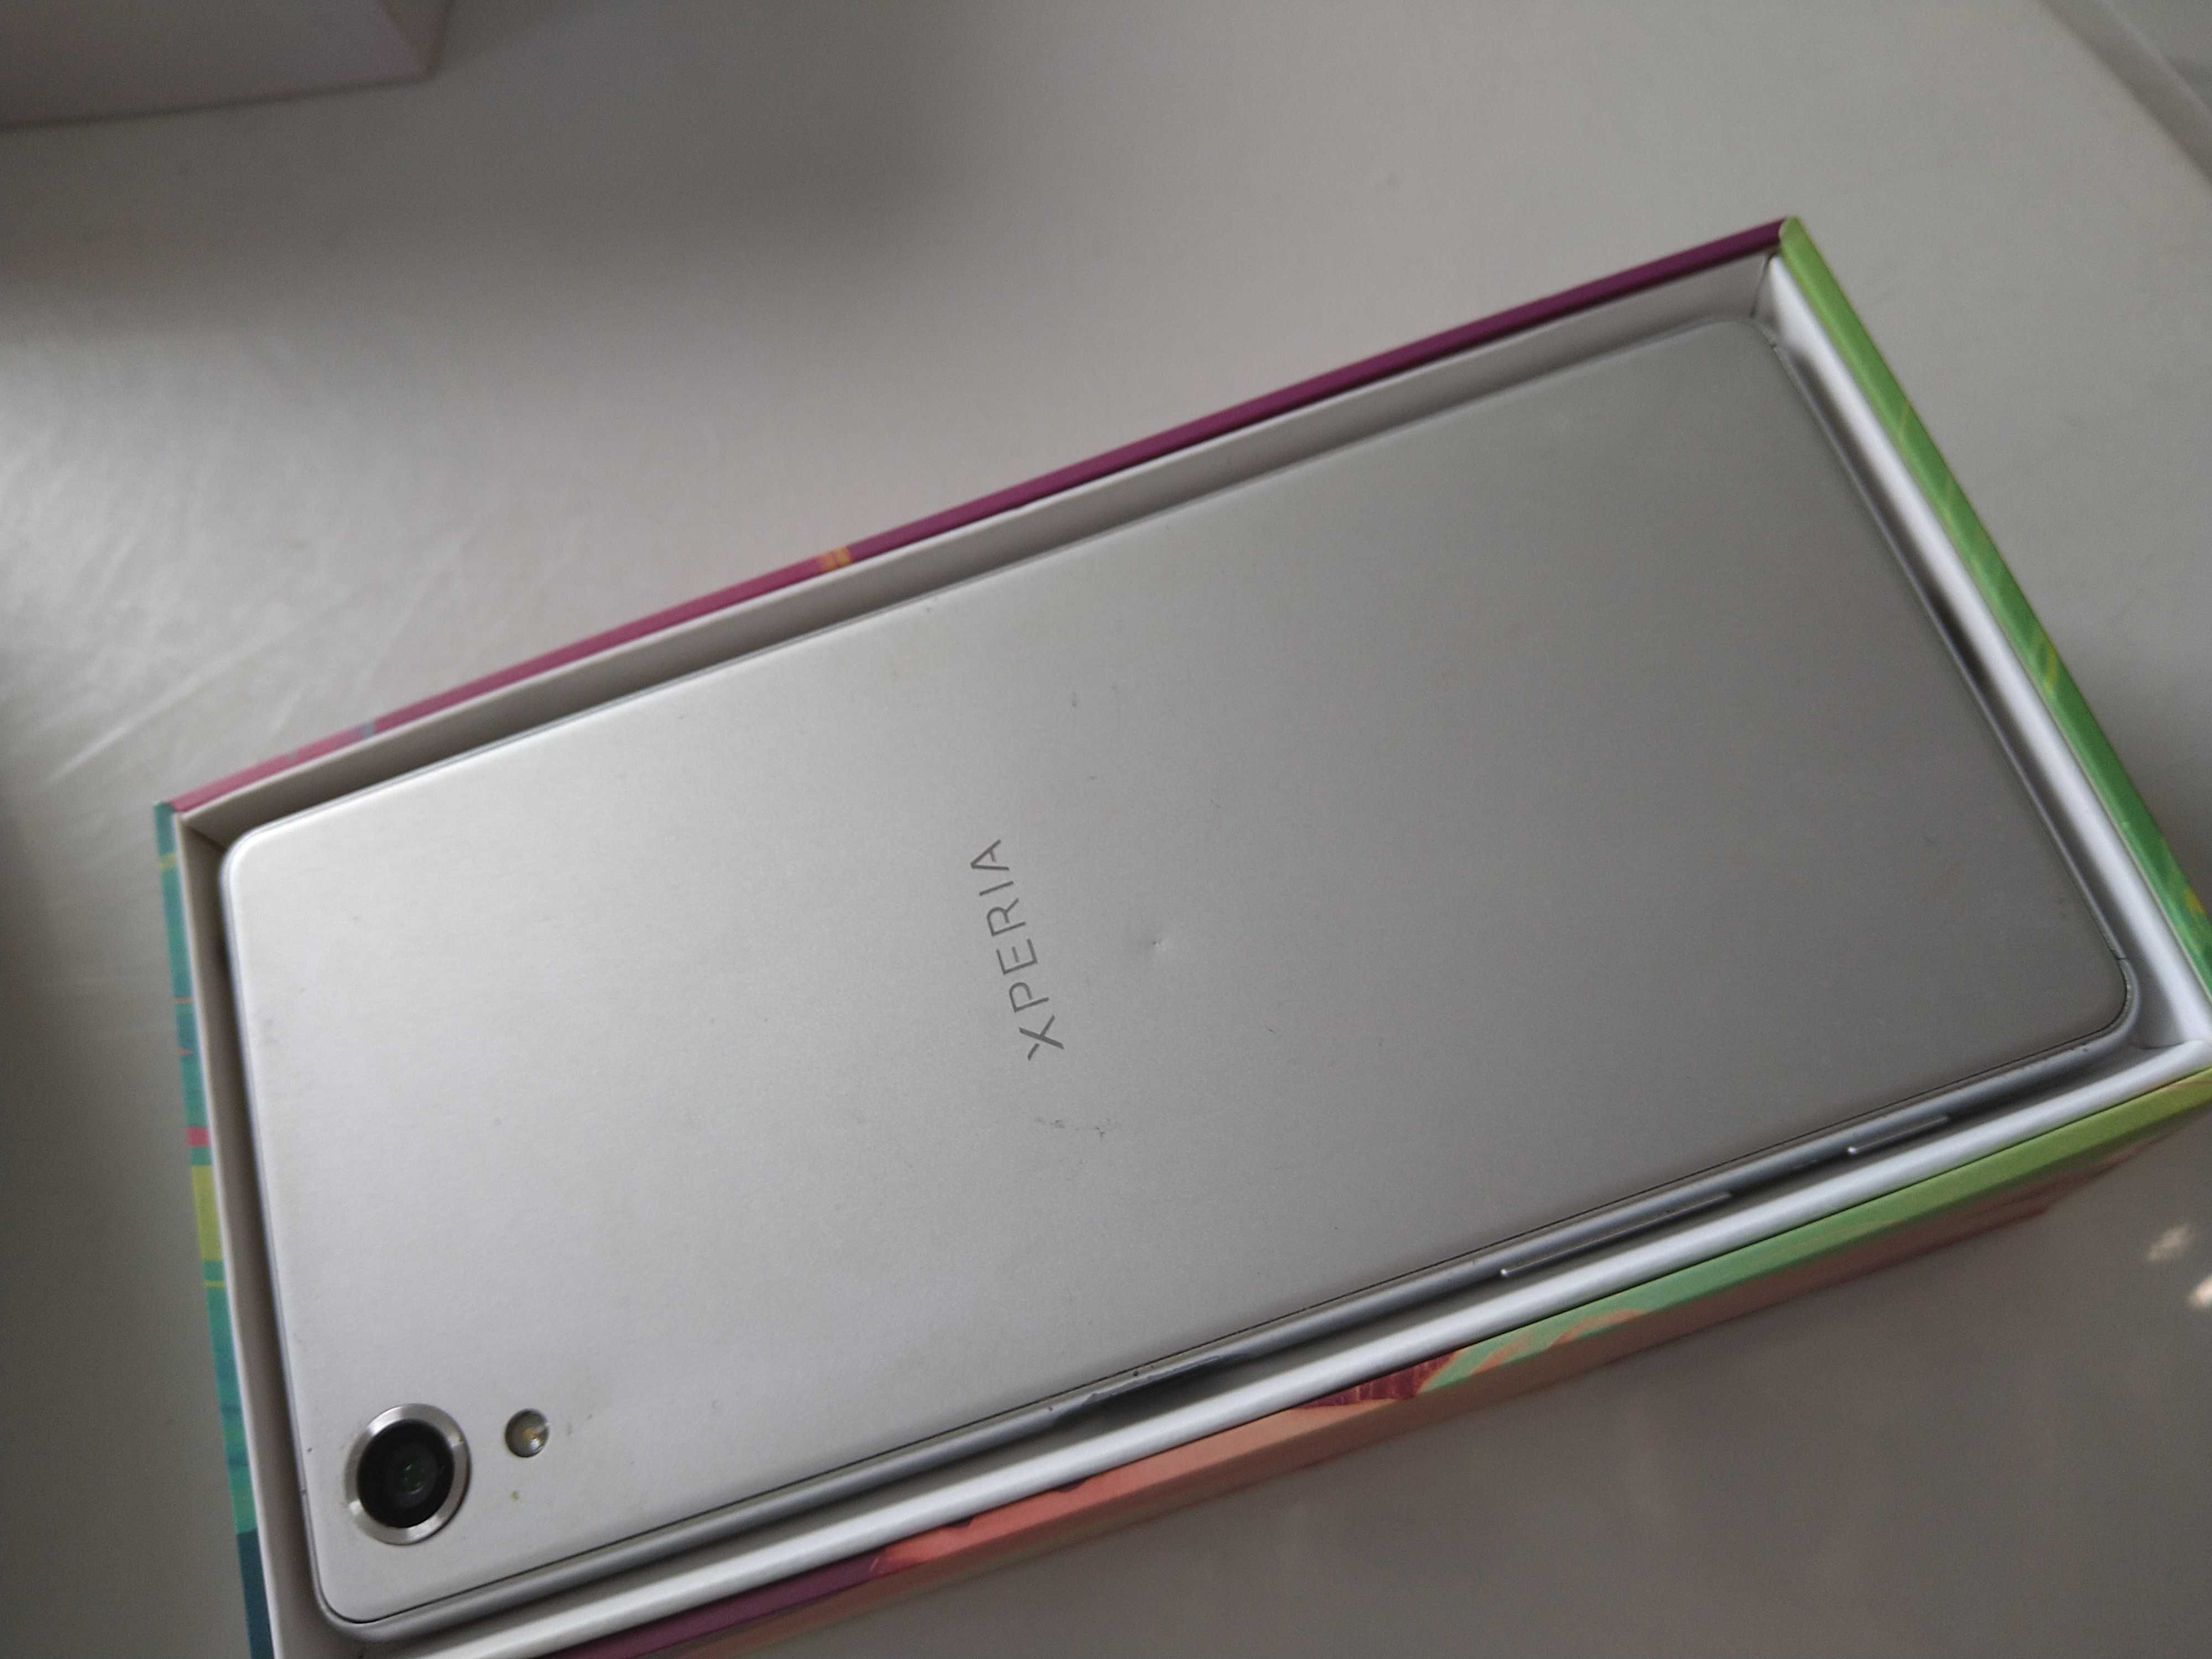 Sony XPERIA X 3GB/32GB biały + akcesoria